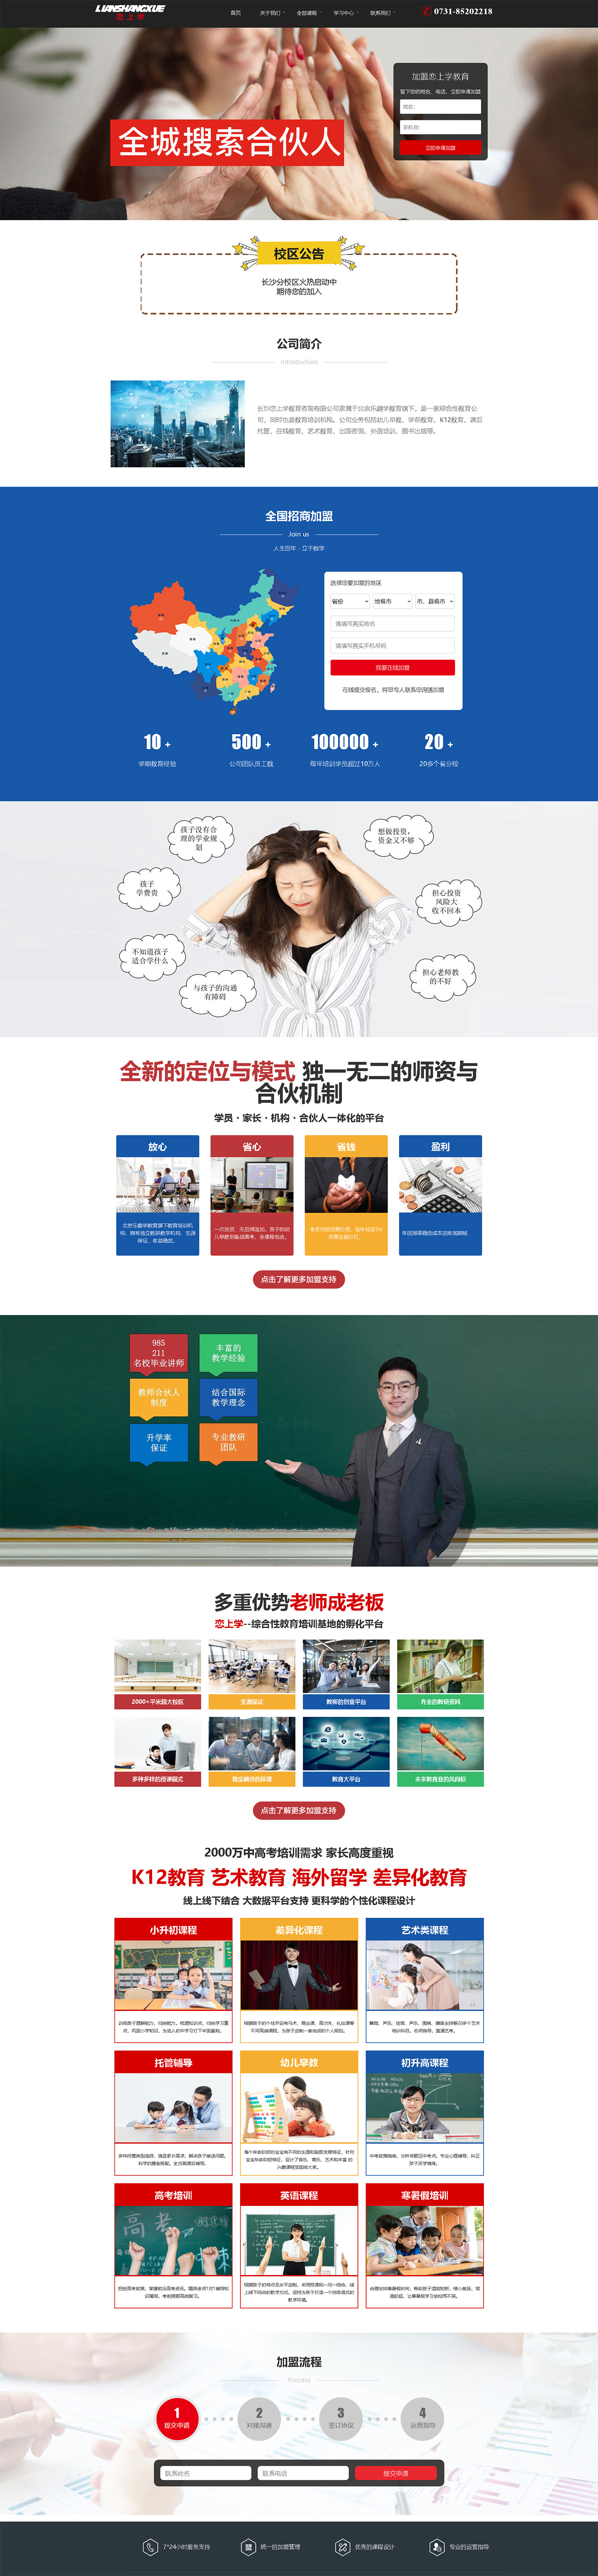 長沙戀上學教育咨詢有限公司網站建設案例